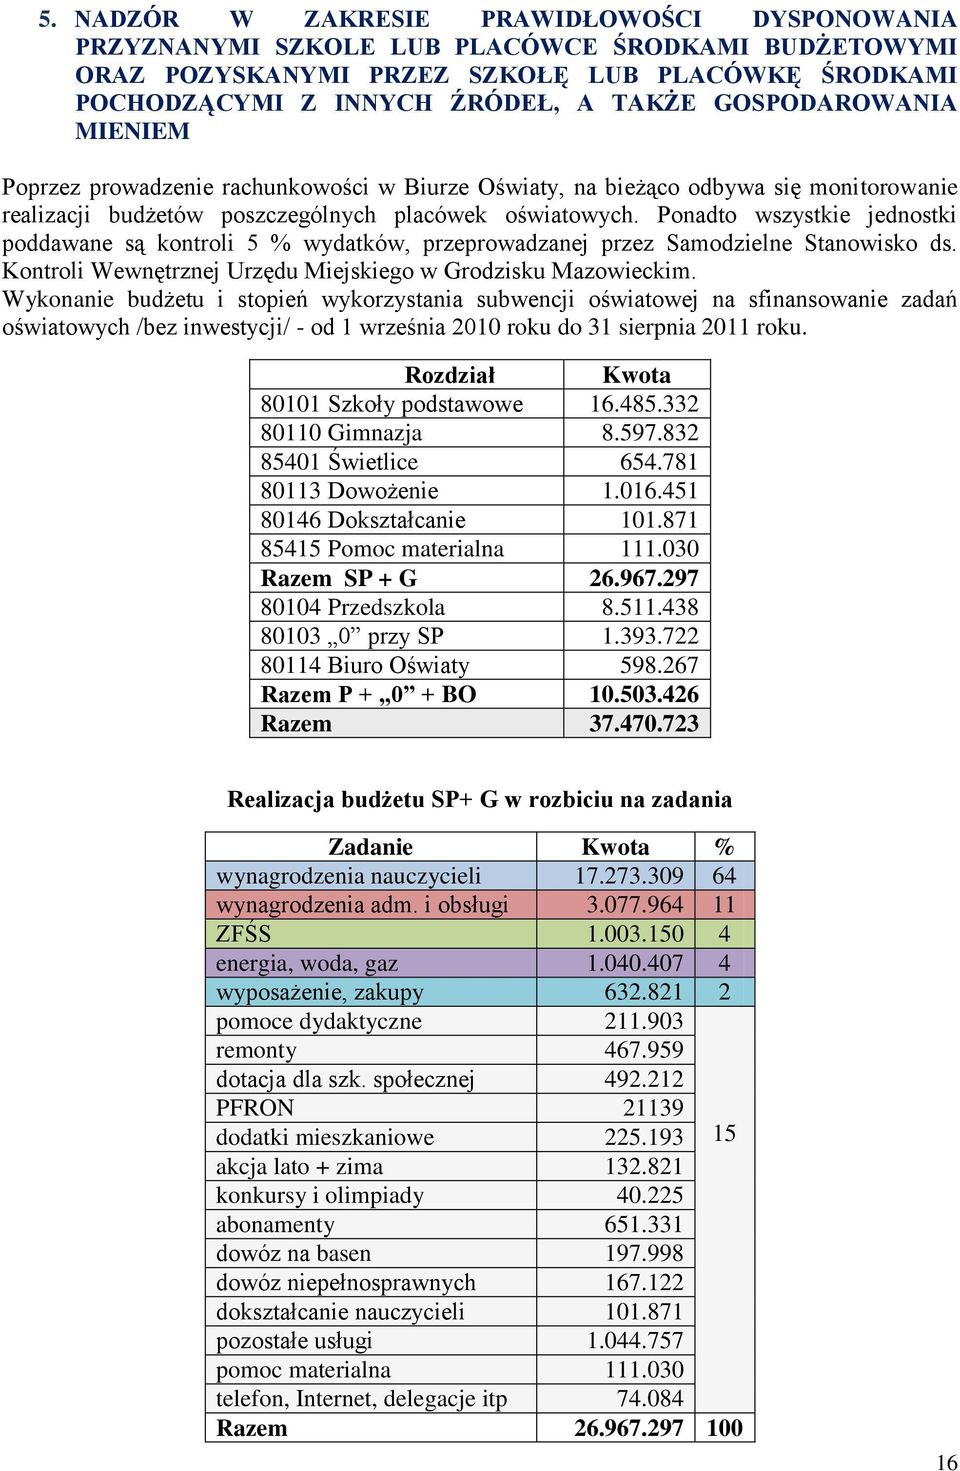 Ponadto wszystkie jednostki poddawane są kontroli 5 % wydatków, przeprowadzanej przez Samodzielne Stanowisko ds. Kontroli Wewnętrznej Urzędu Miejskiego w Grodzisku Mazowieckim.